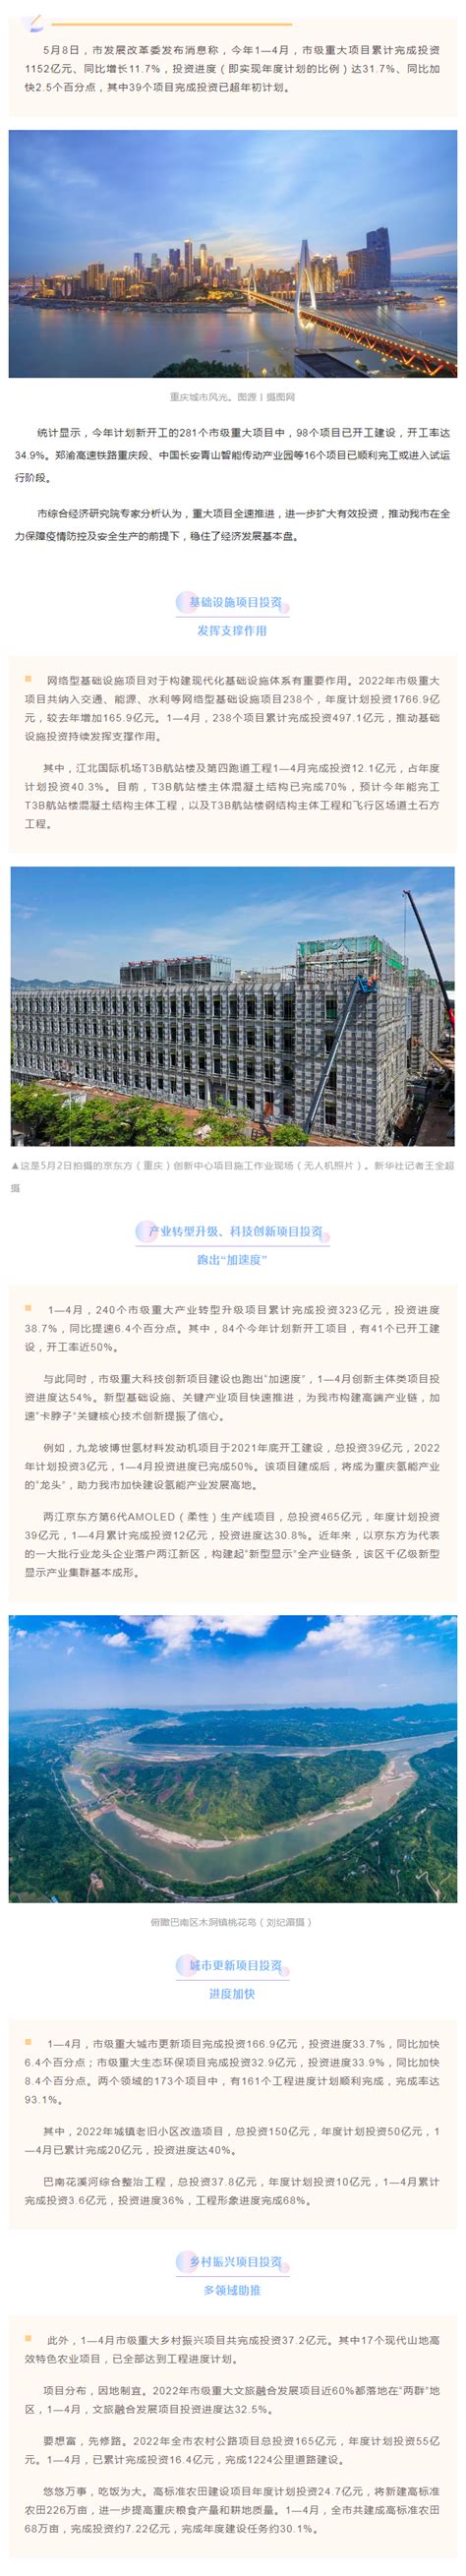 1—4月重庆市级重大项目完成投资1152亿元-重庆市招商投资促进局